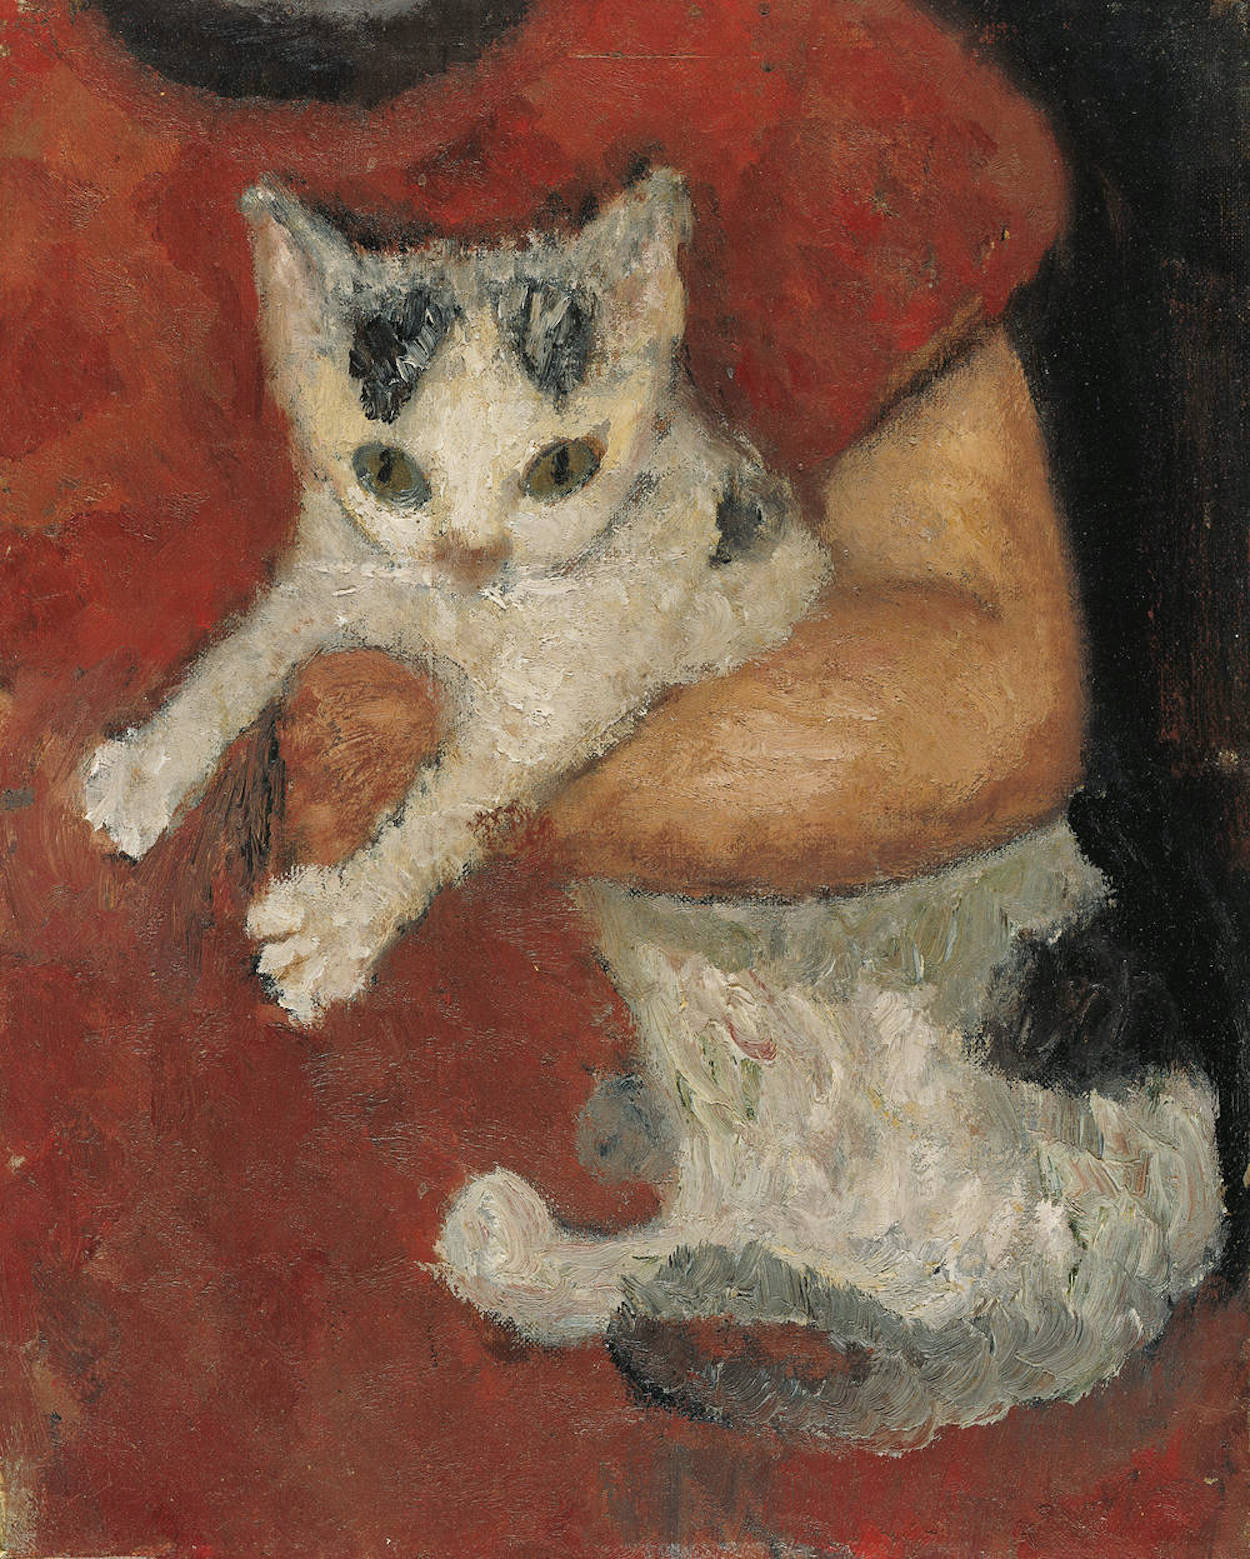 孩子怀里的猫咪 by 保拉 莫德索恩-贝克尔 - 1903 - 32.5 x 25.6 cm 不来梅美术馆